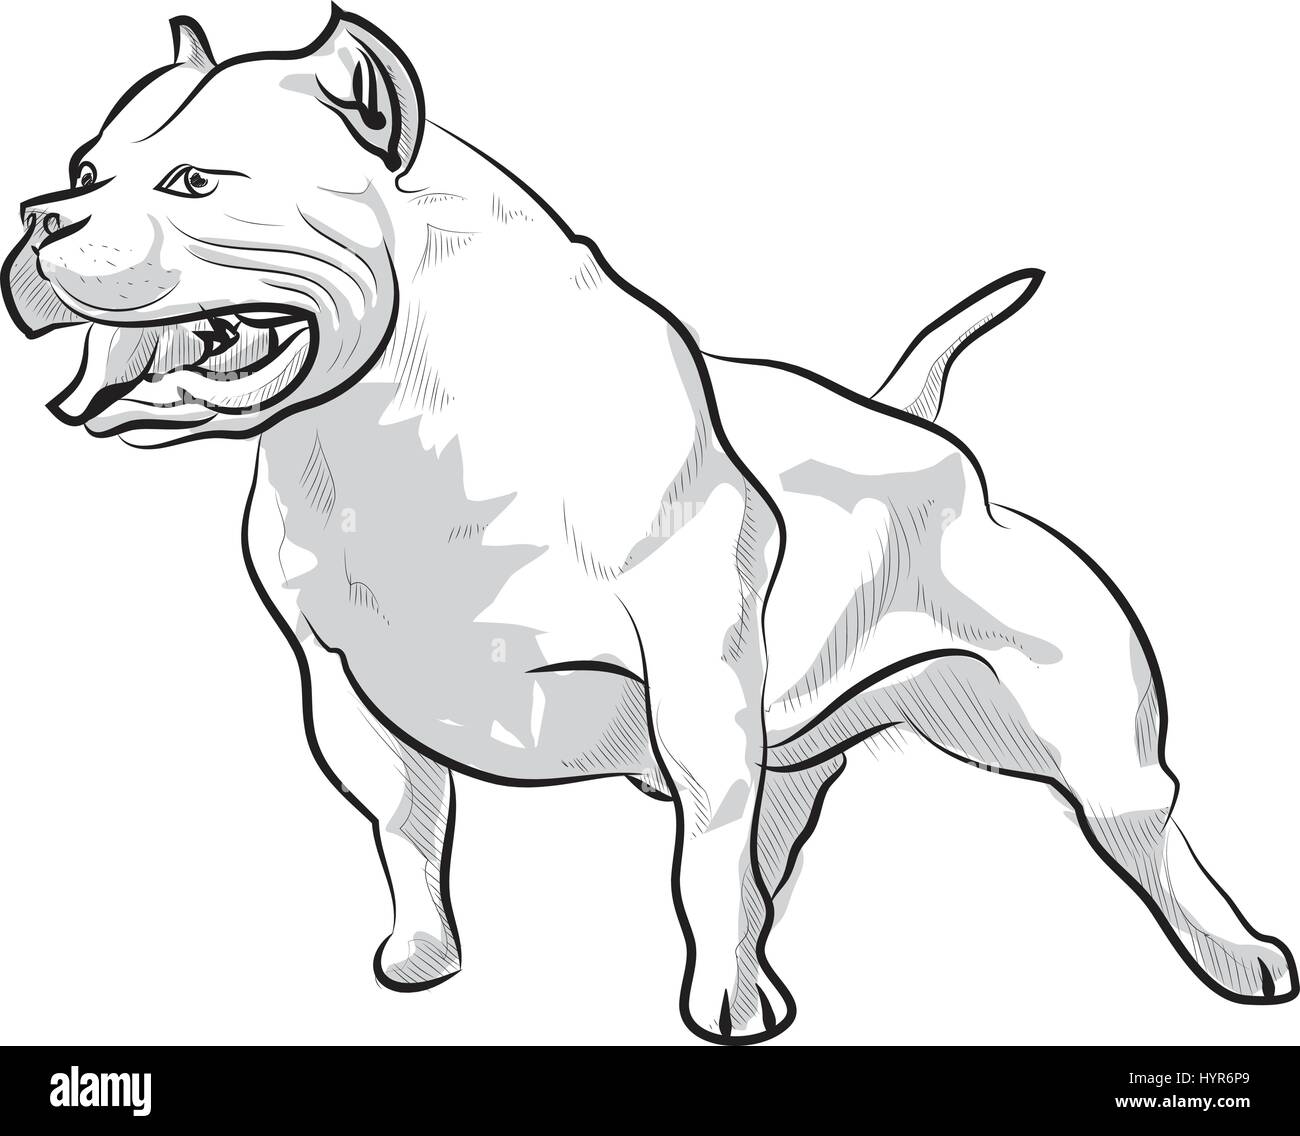 Dessin vectoriel dessin illustration pitbull barking Illustration de Vecteur